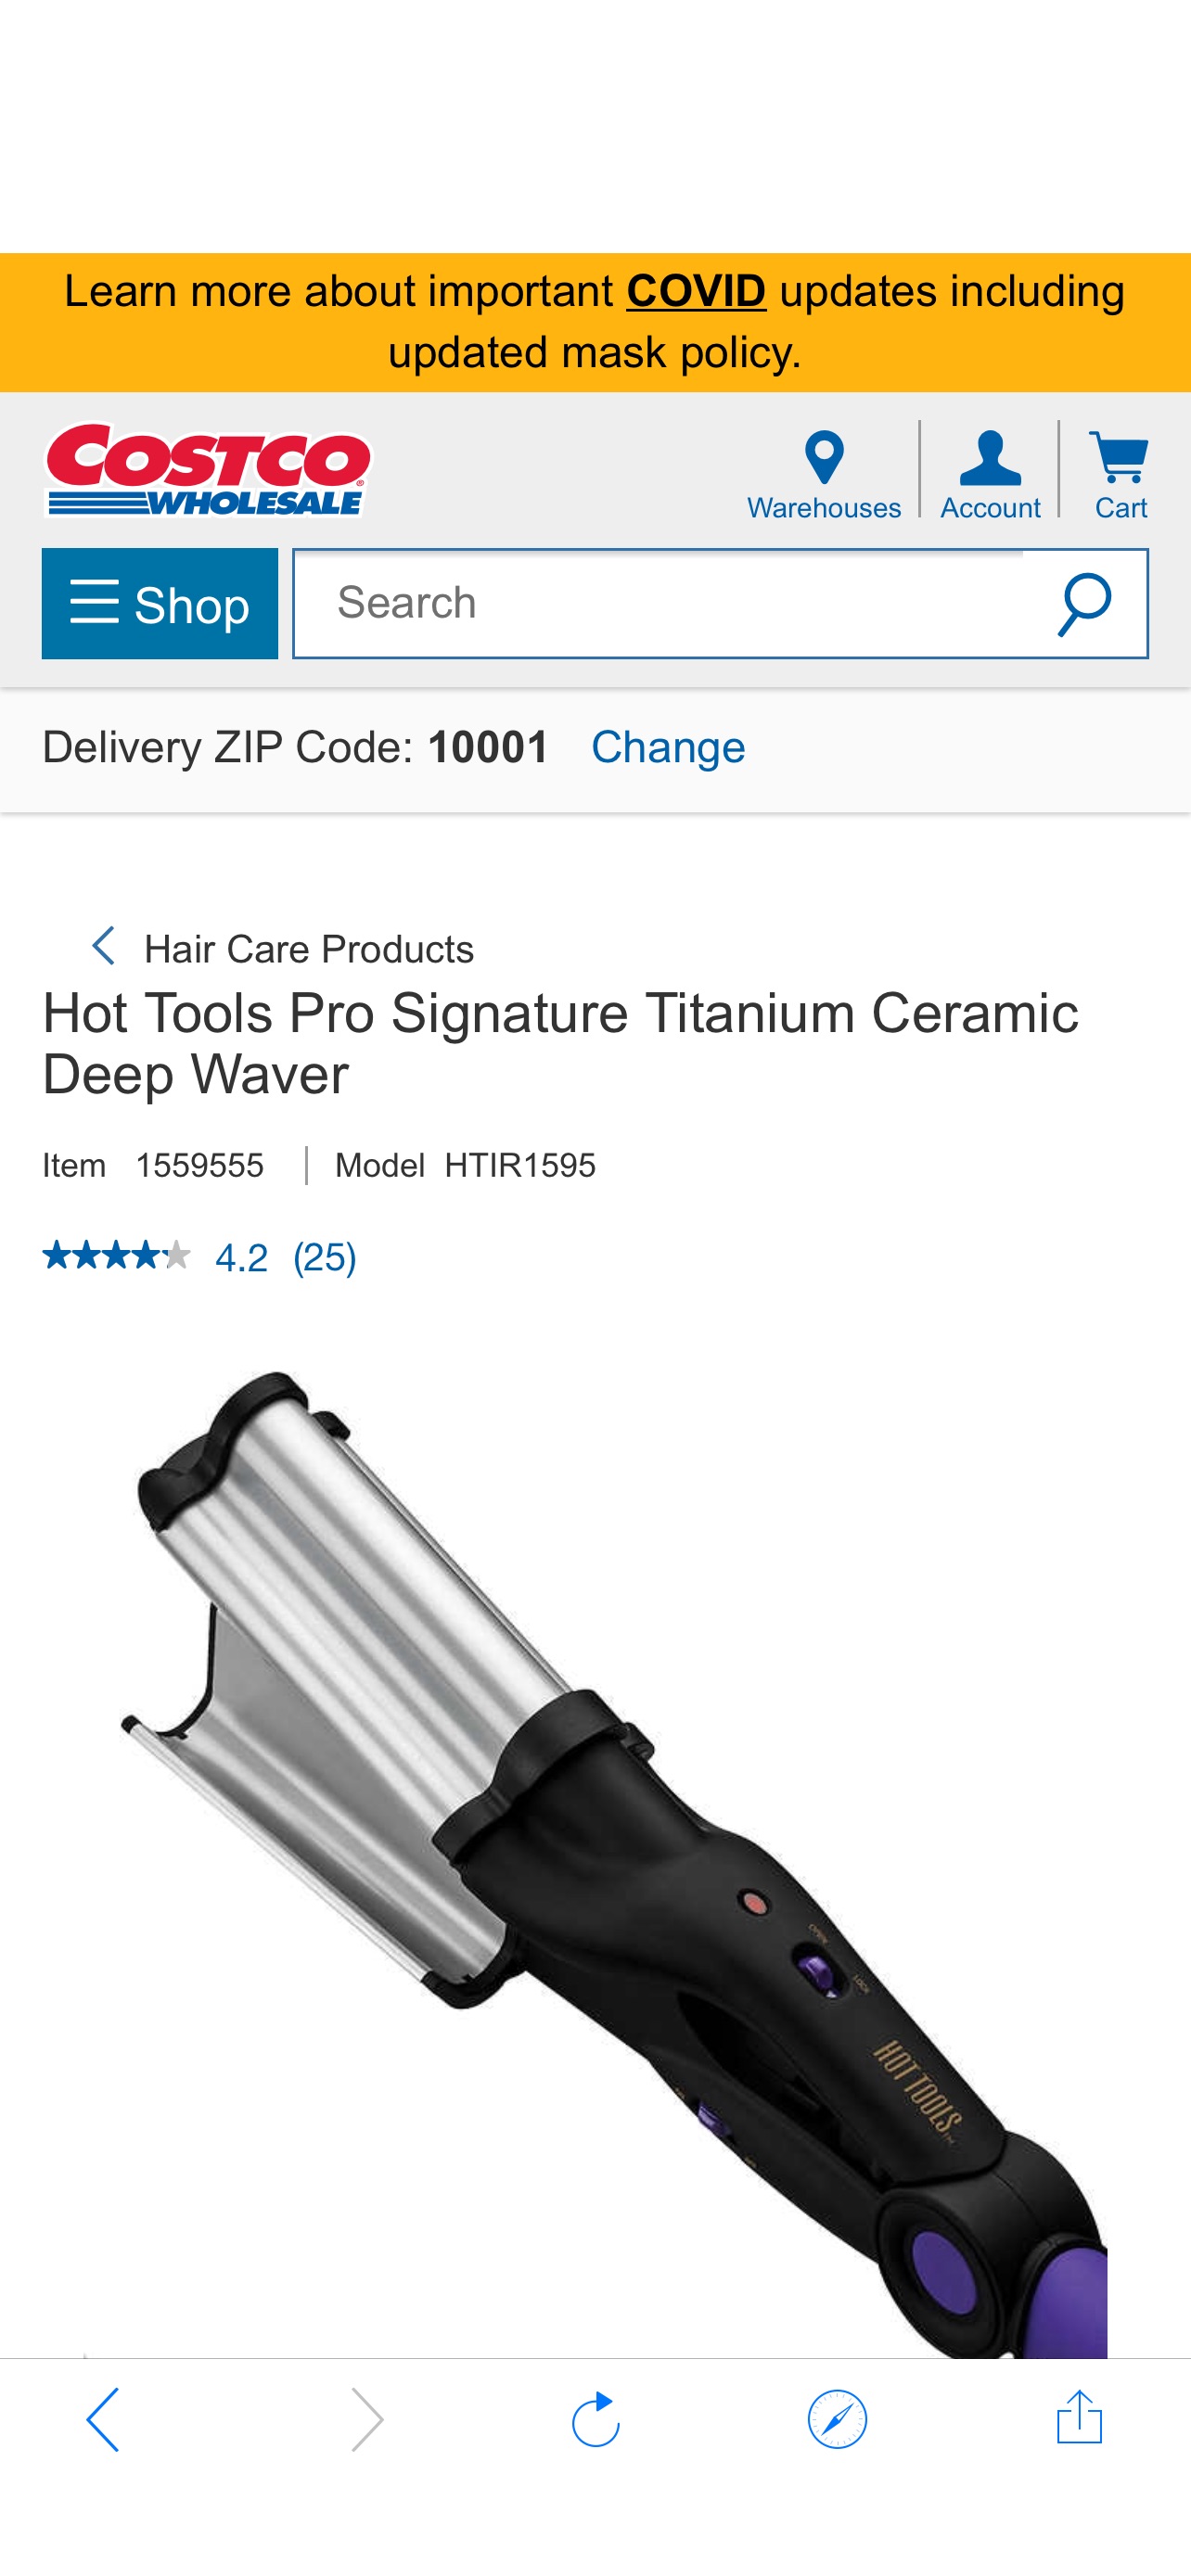 Hot Tools Pro Signature Titanium Ceramic Deep Waver  | Costco卷发棒